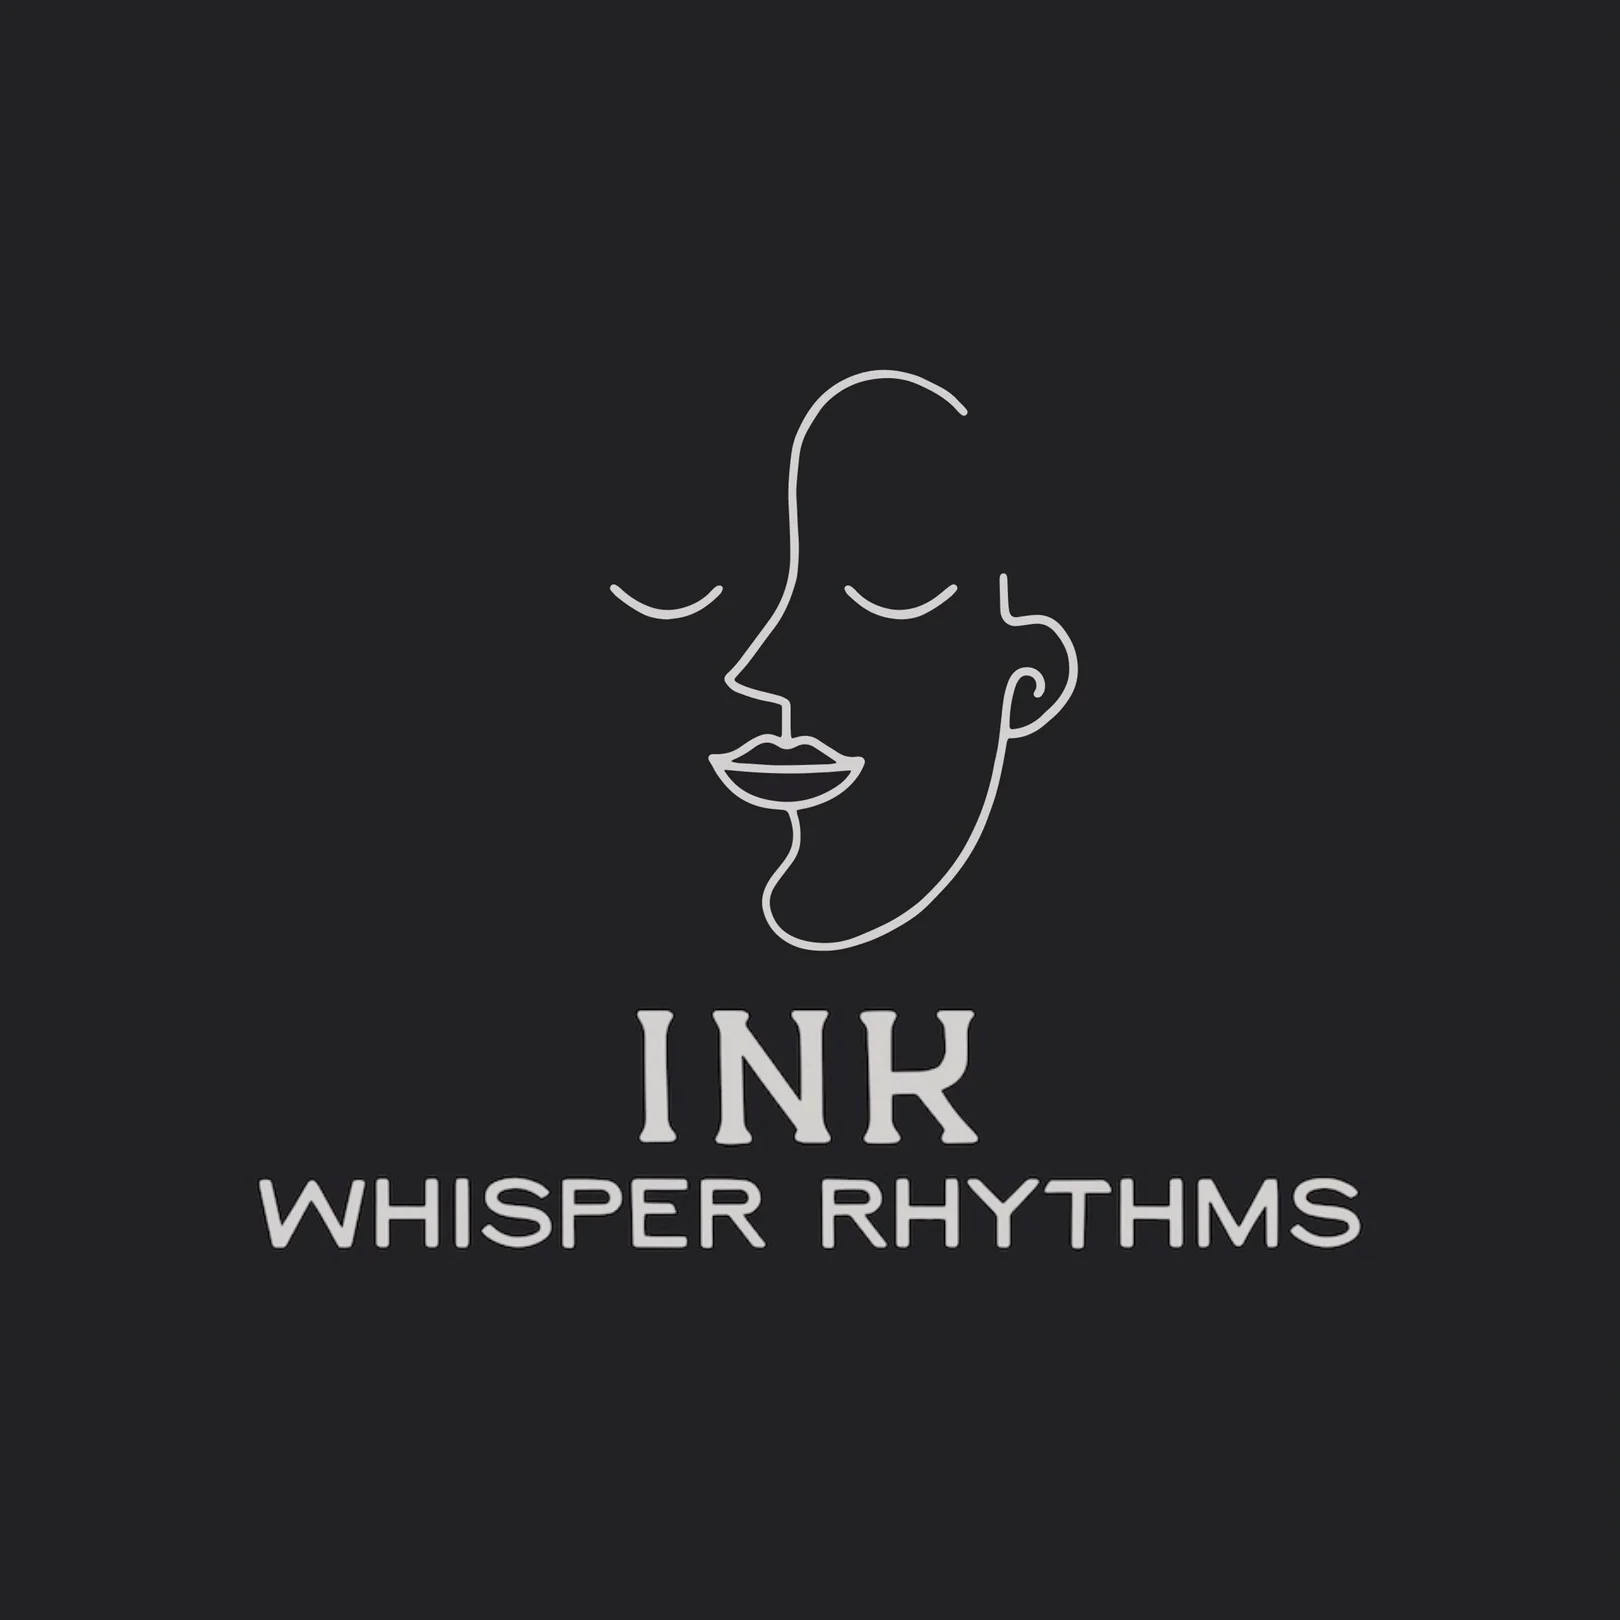 74% off “Whisper Rhythms” by Ink Audio